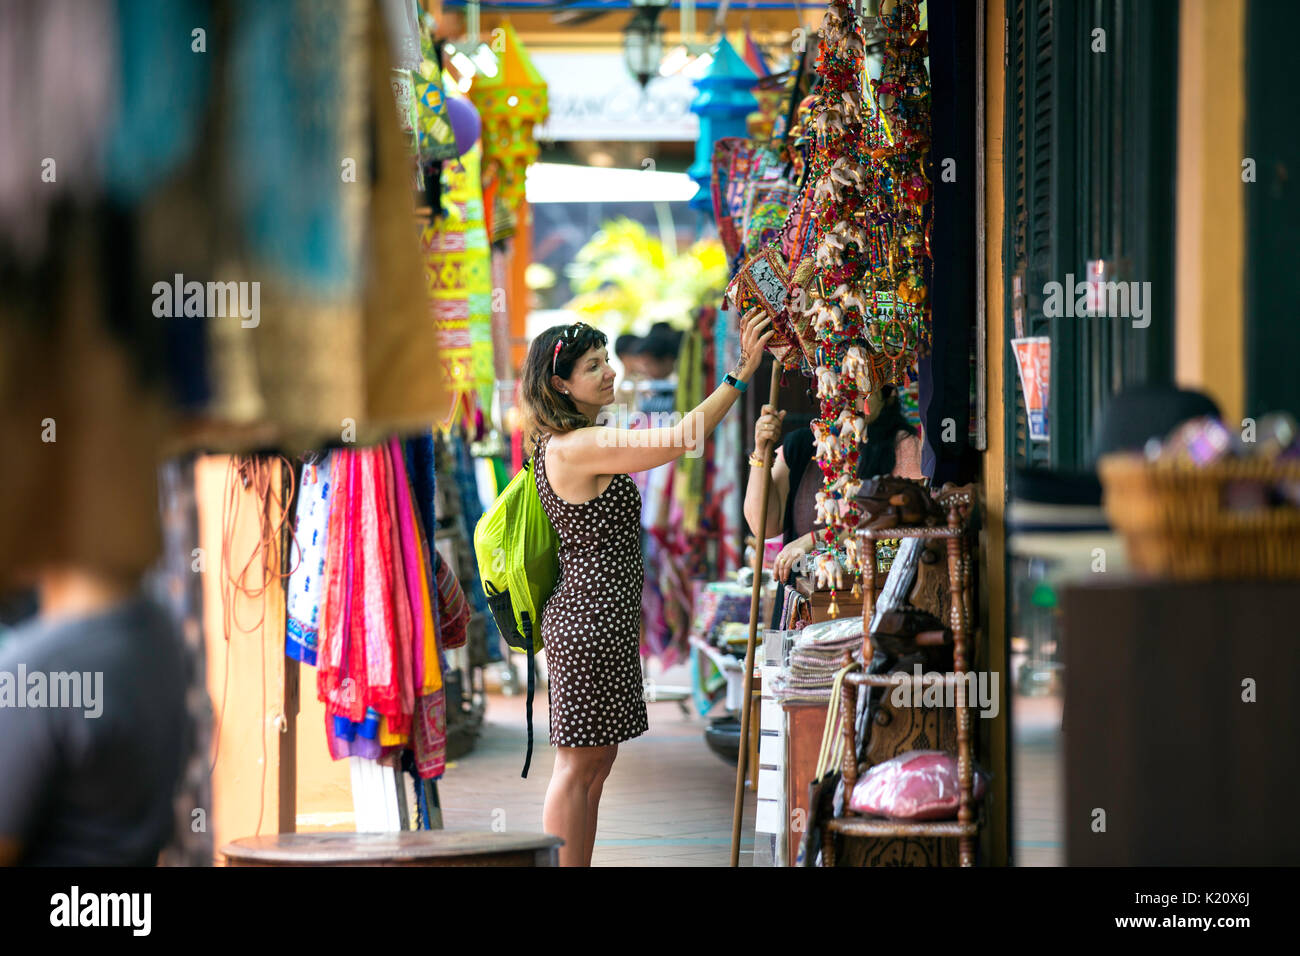 Ausländische Dame touristische Shopping für Bunte indische Kuriositäten in einem indischen Handwerk Souvenir shop in Little India, Little India Arcade, Singapur, Asien Stockfoto